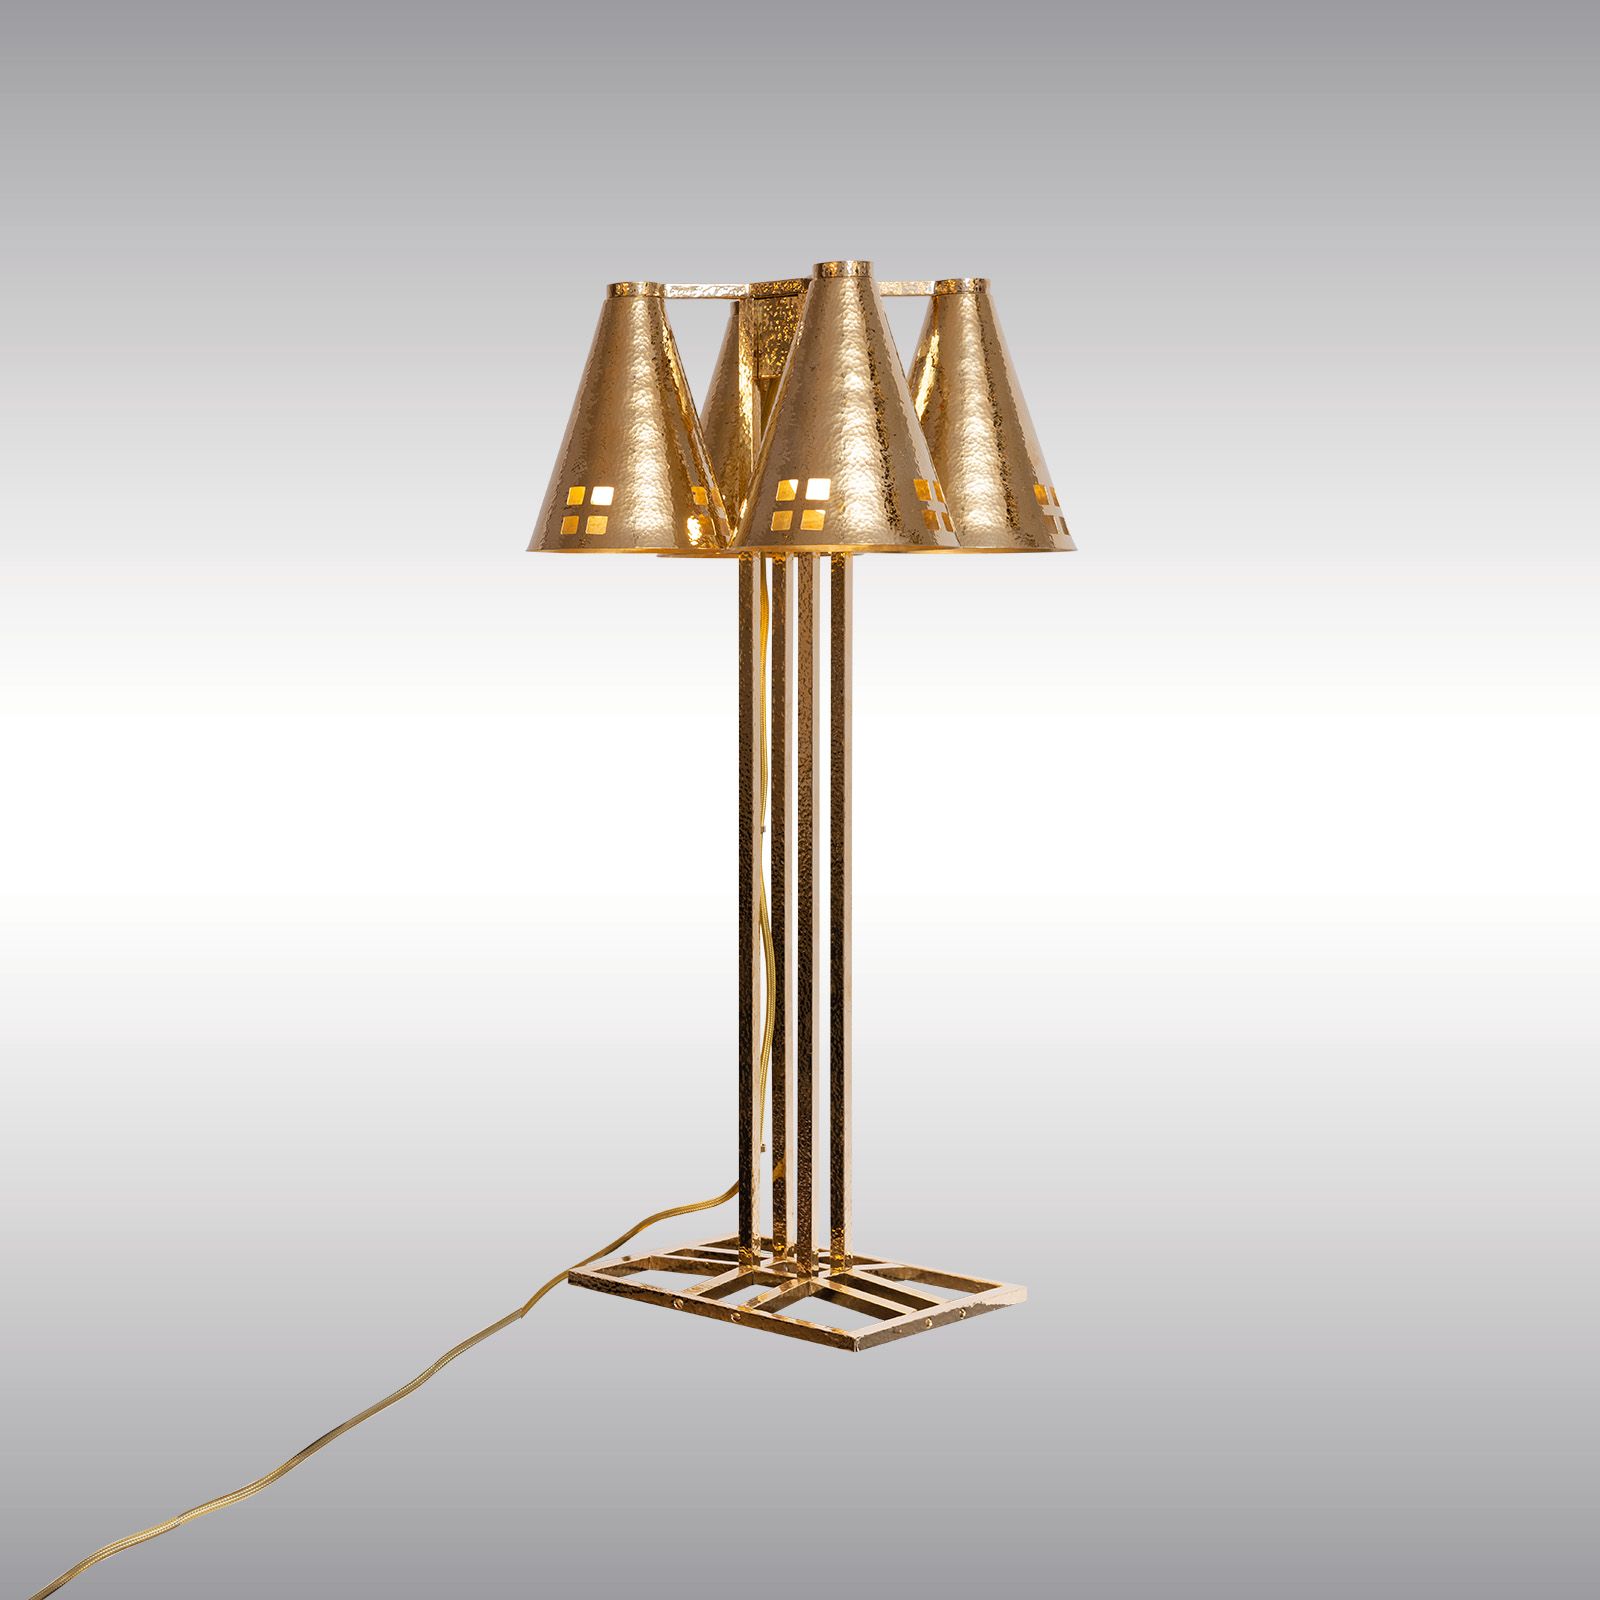 WOKA LAMPS VIENNA - OrderNr.: 22002|Kubistische Josef Hoffmann Tischlampe Entwurf 1903 - Design: Josef Hoffmann